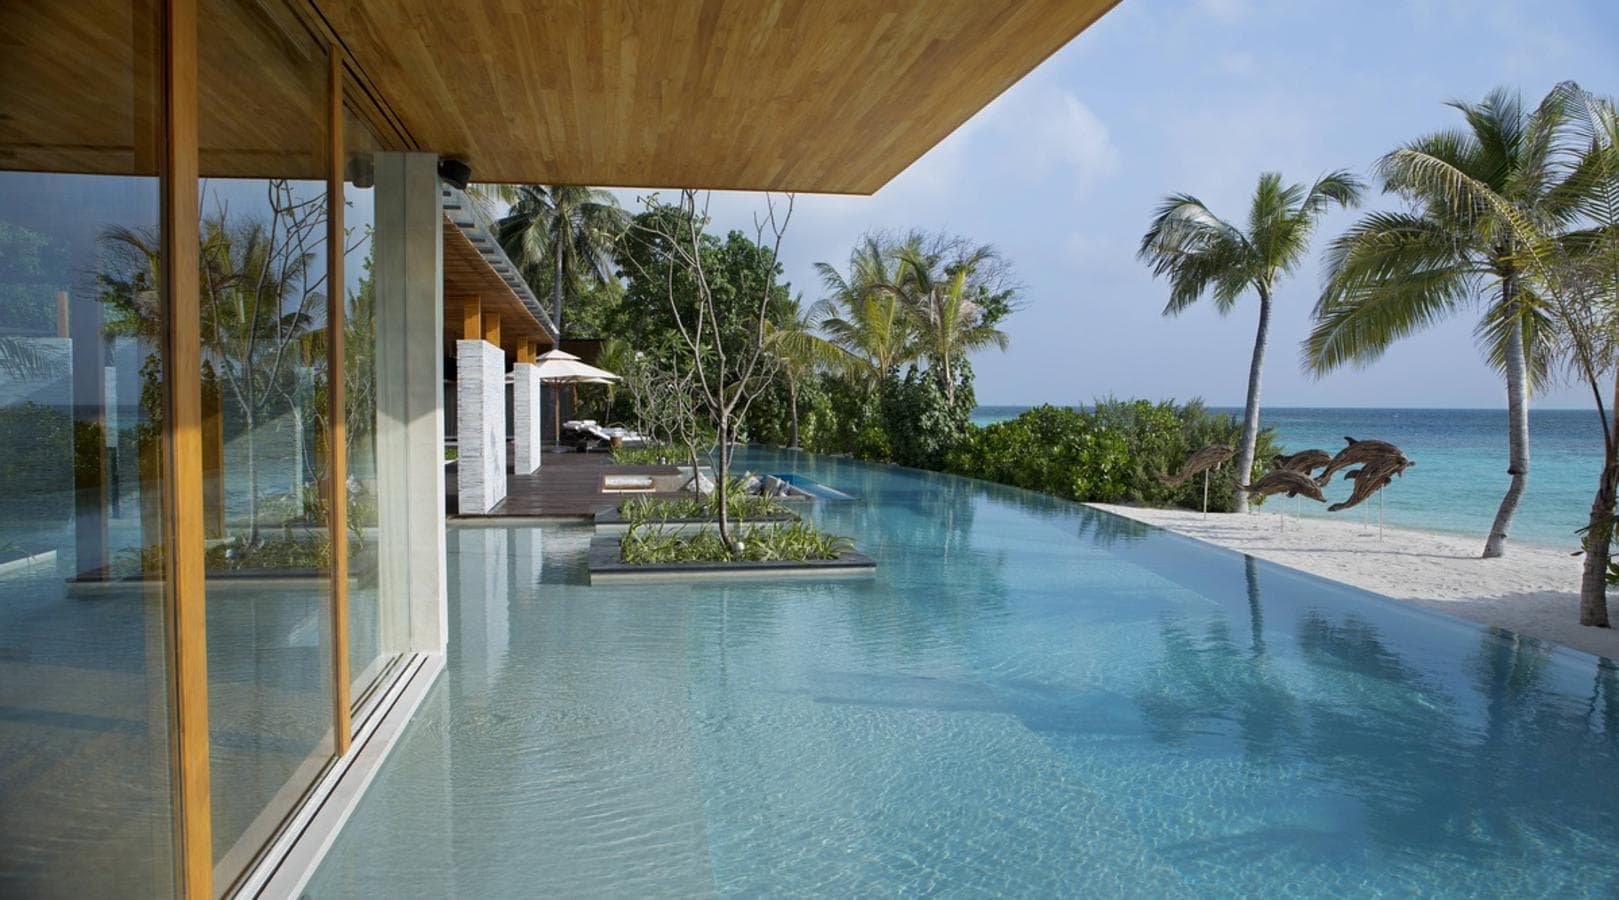 La isla de Maldivas de 40.000 dólares la noche. Concebidas por el galardonado arquitecto Guz Wilkinson, las villas fusionan un diseño vanguardista con materiales tradicionales de Maldivas: una arquitectura elegante que contrasta con el exuberante dosel de la jungla.